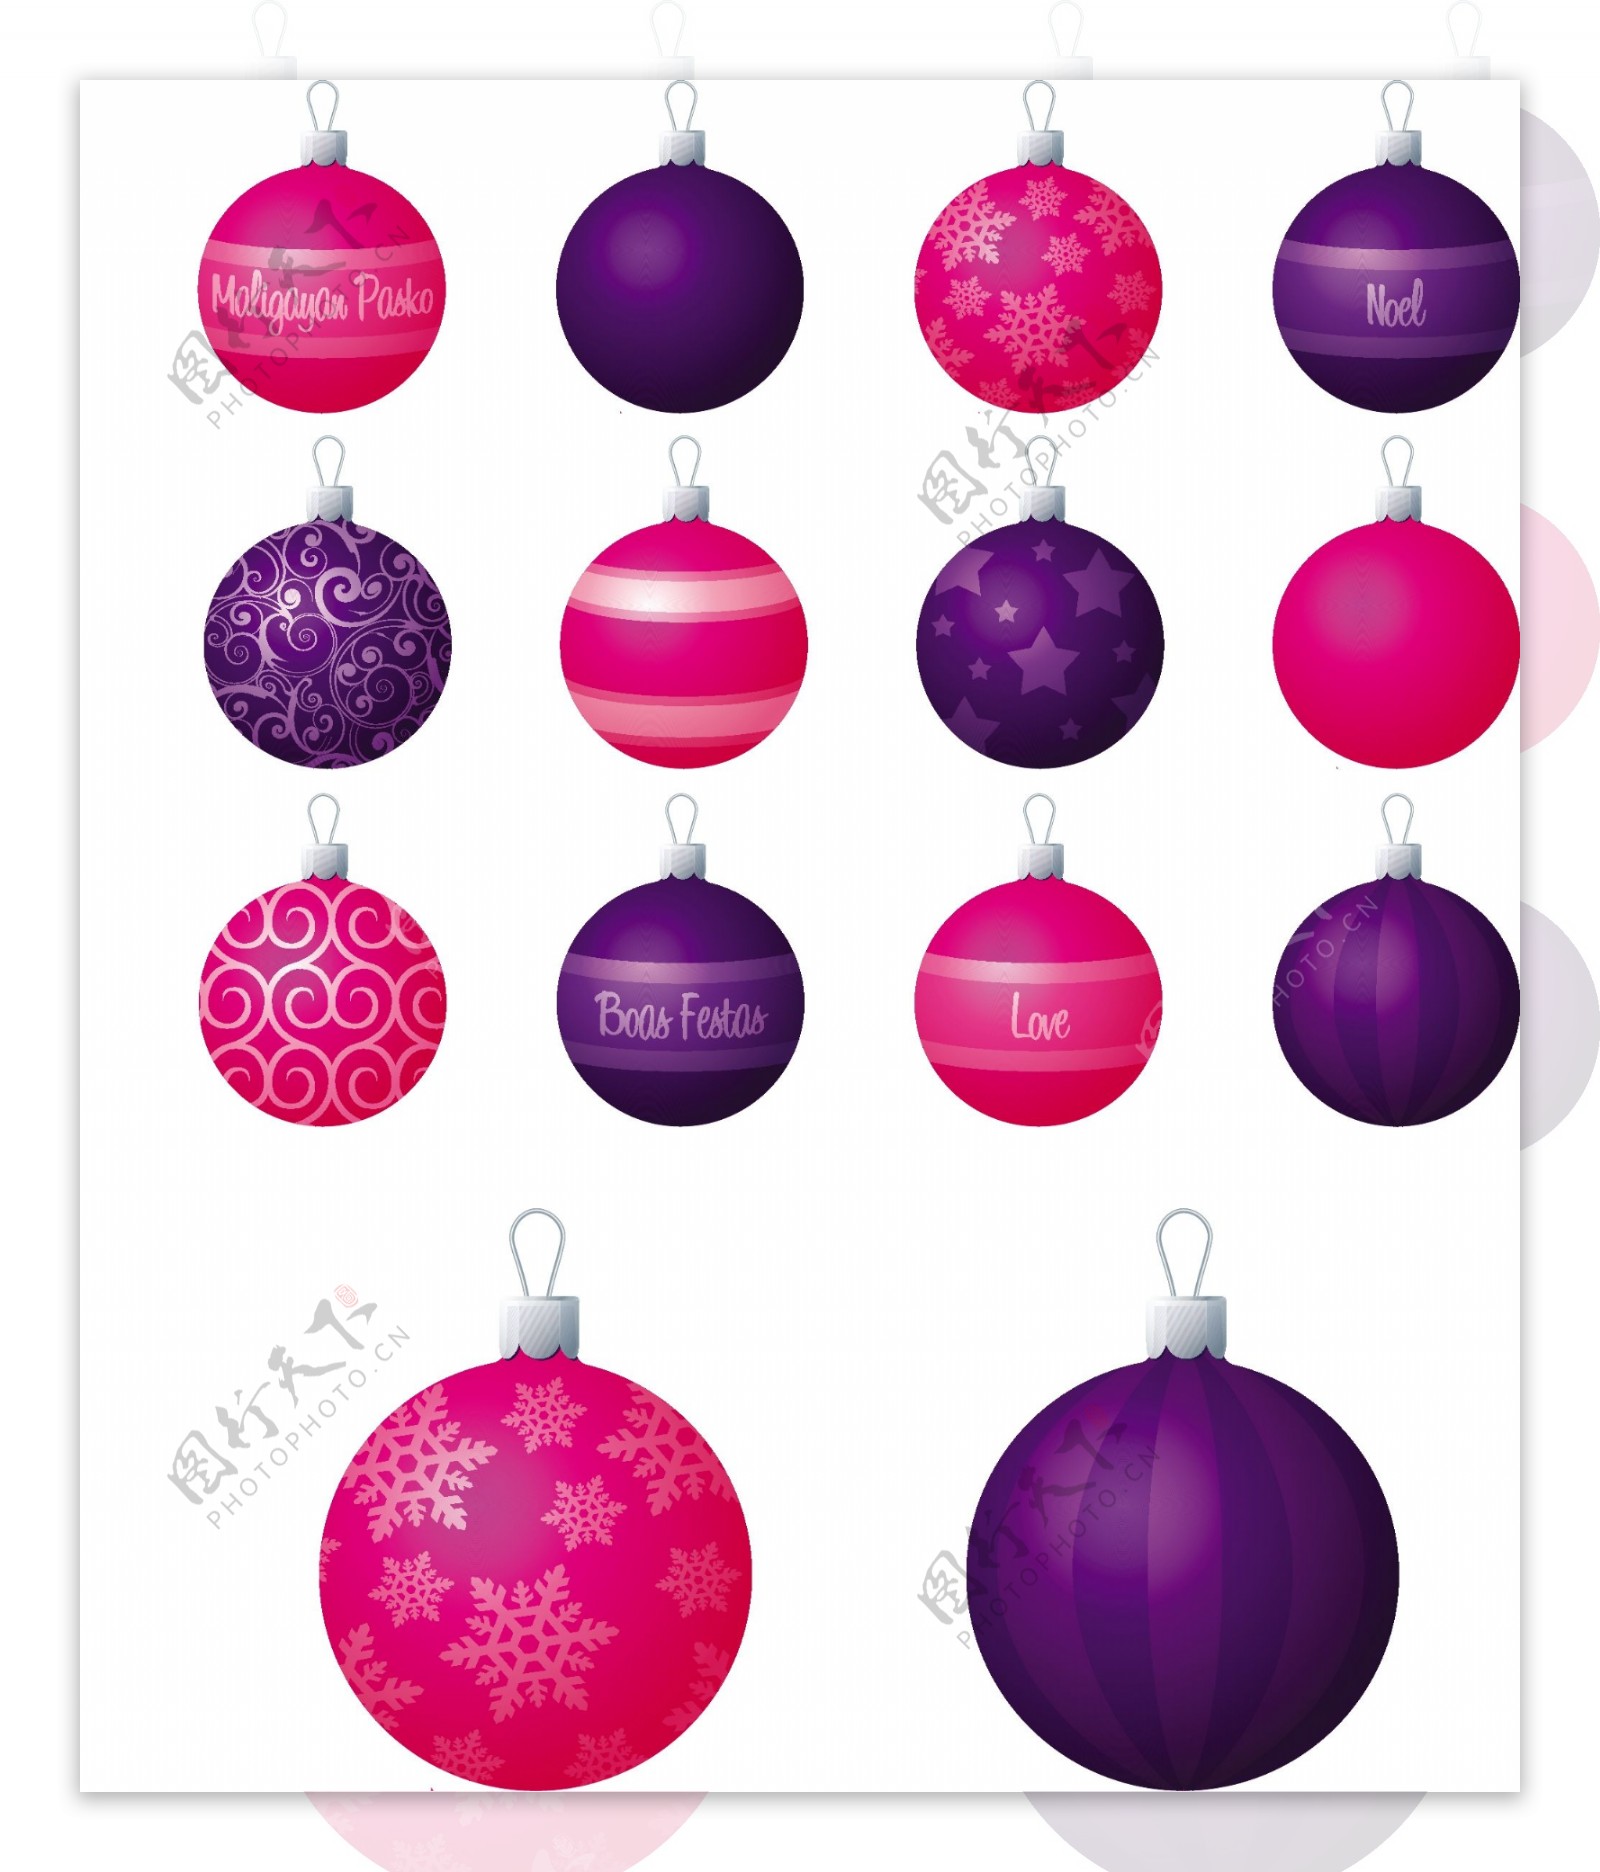 一个粉红色和紫色的不同图案的圣诞装饰品在白色背景矢量插画